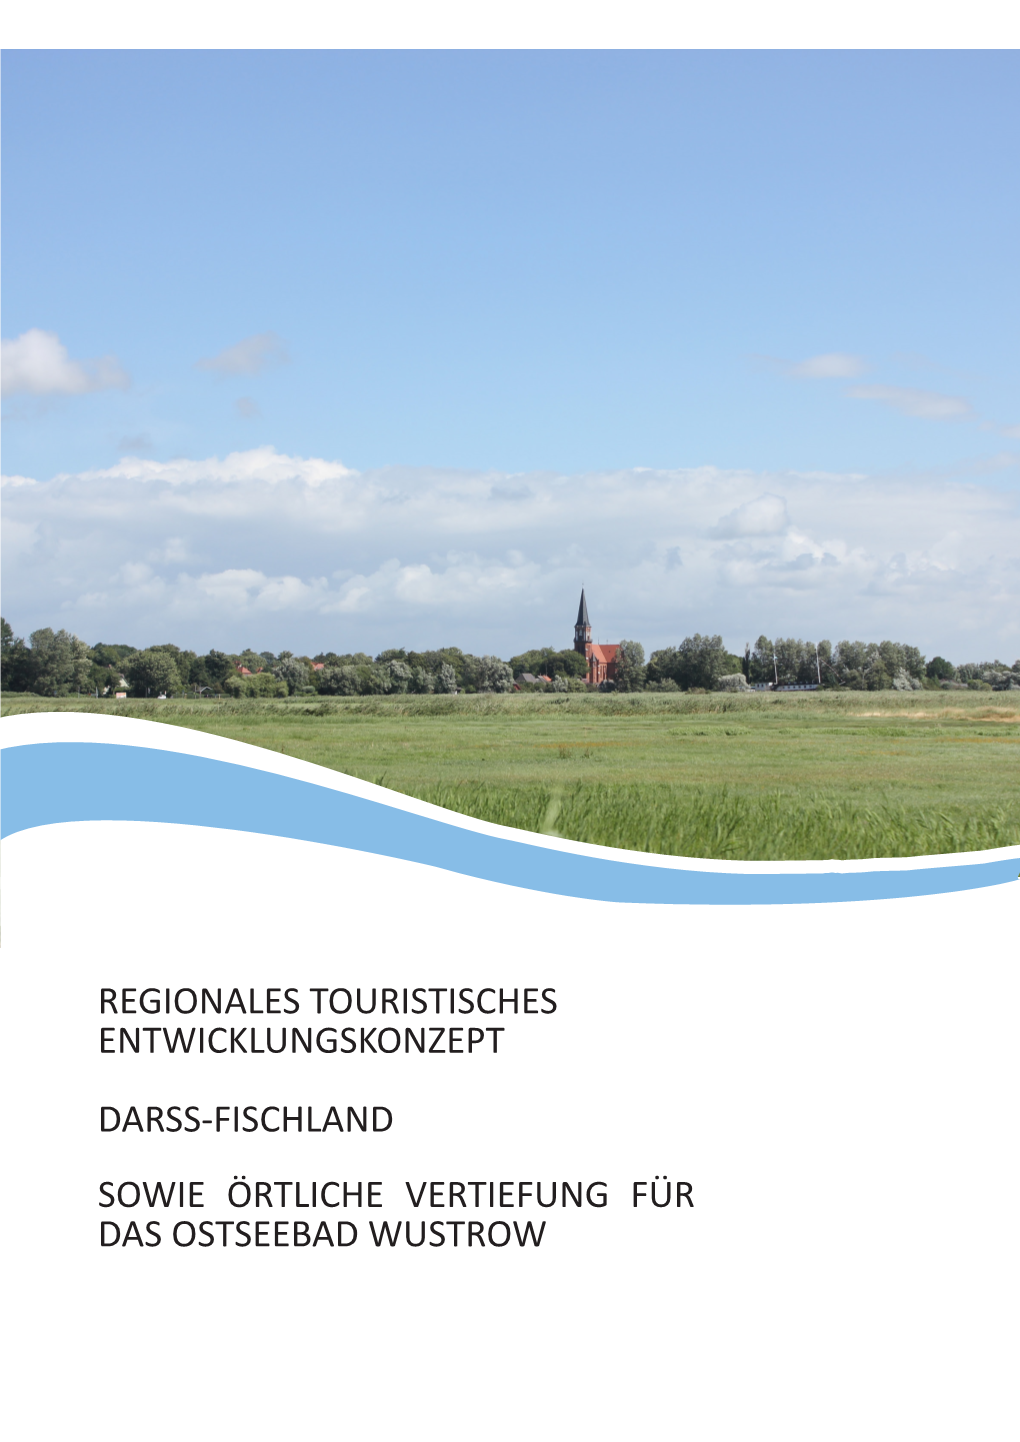 Regionales Touristisches Entwicklungskonzept Darss-Fischland Sowie Örtliche Vertiefung Für Das Ostseebad Wustrow